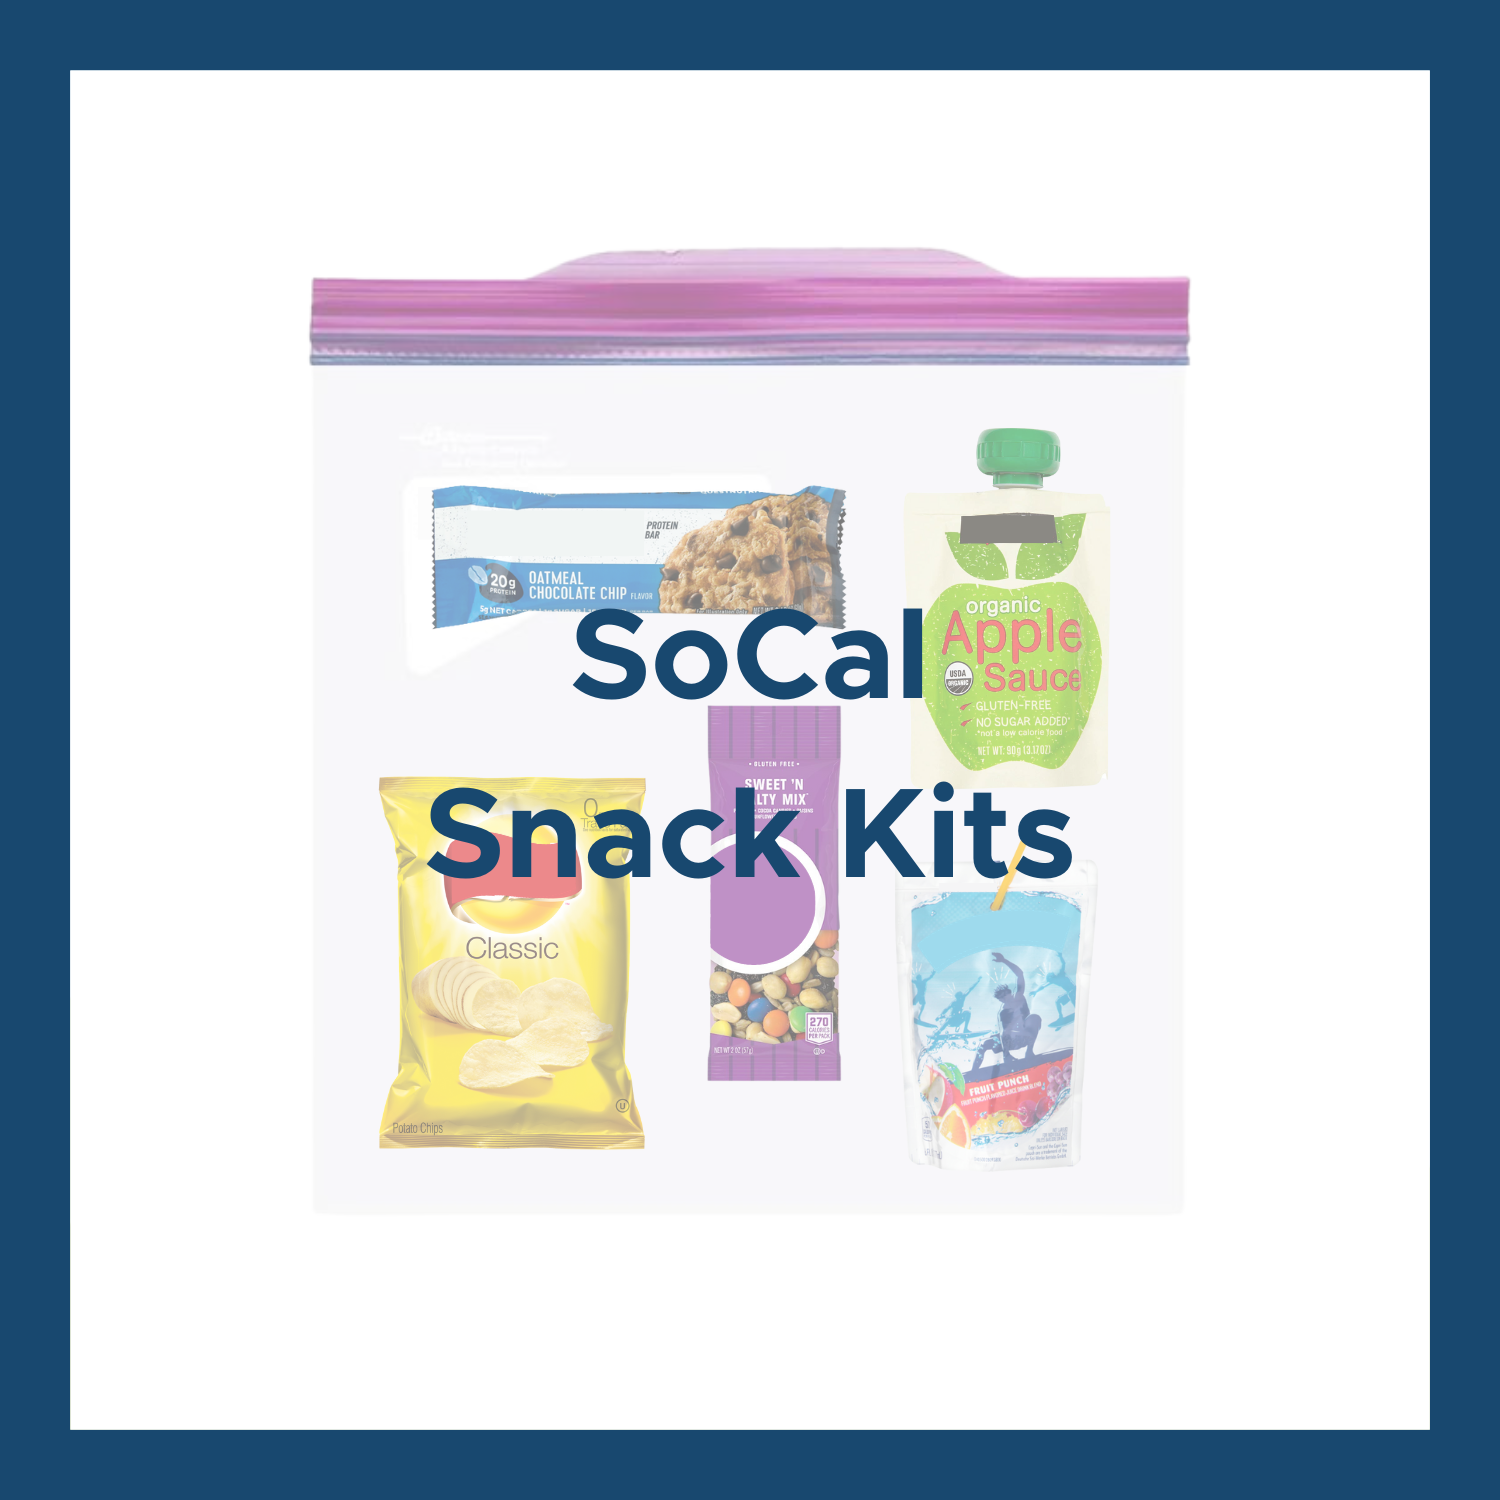 SoCal Snack Kits